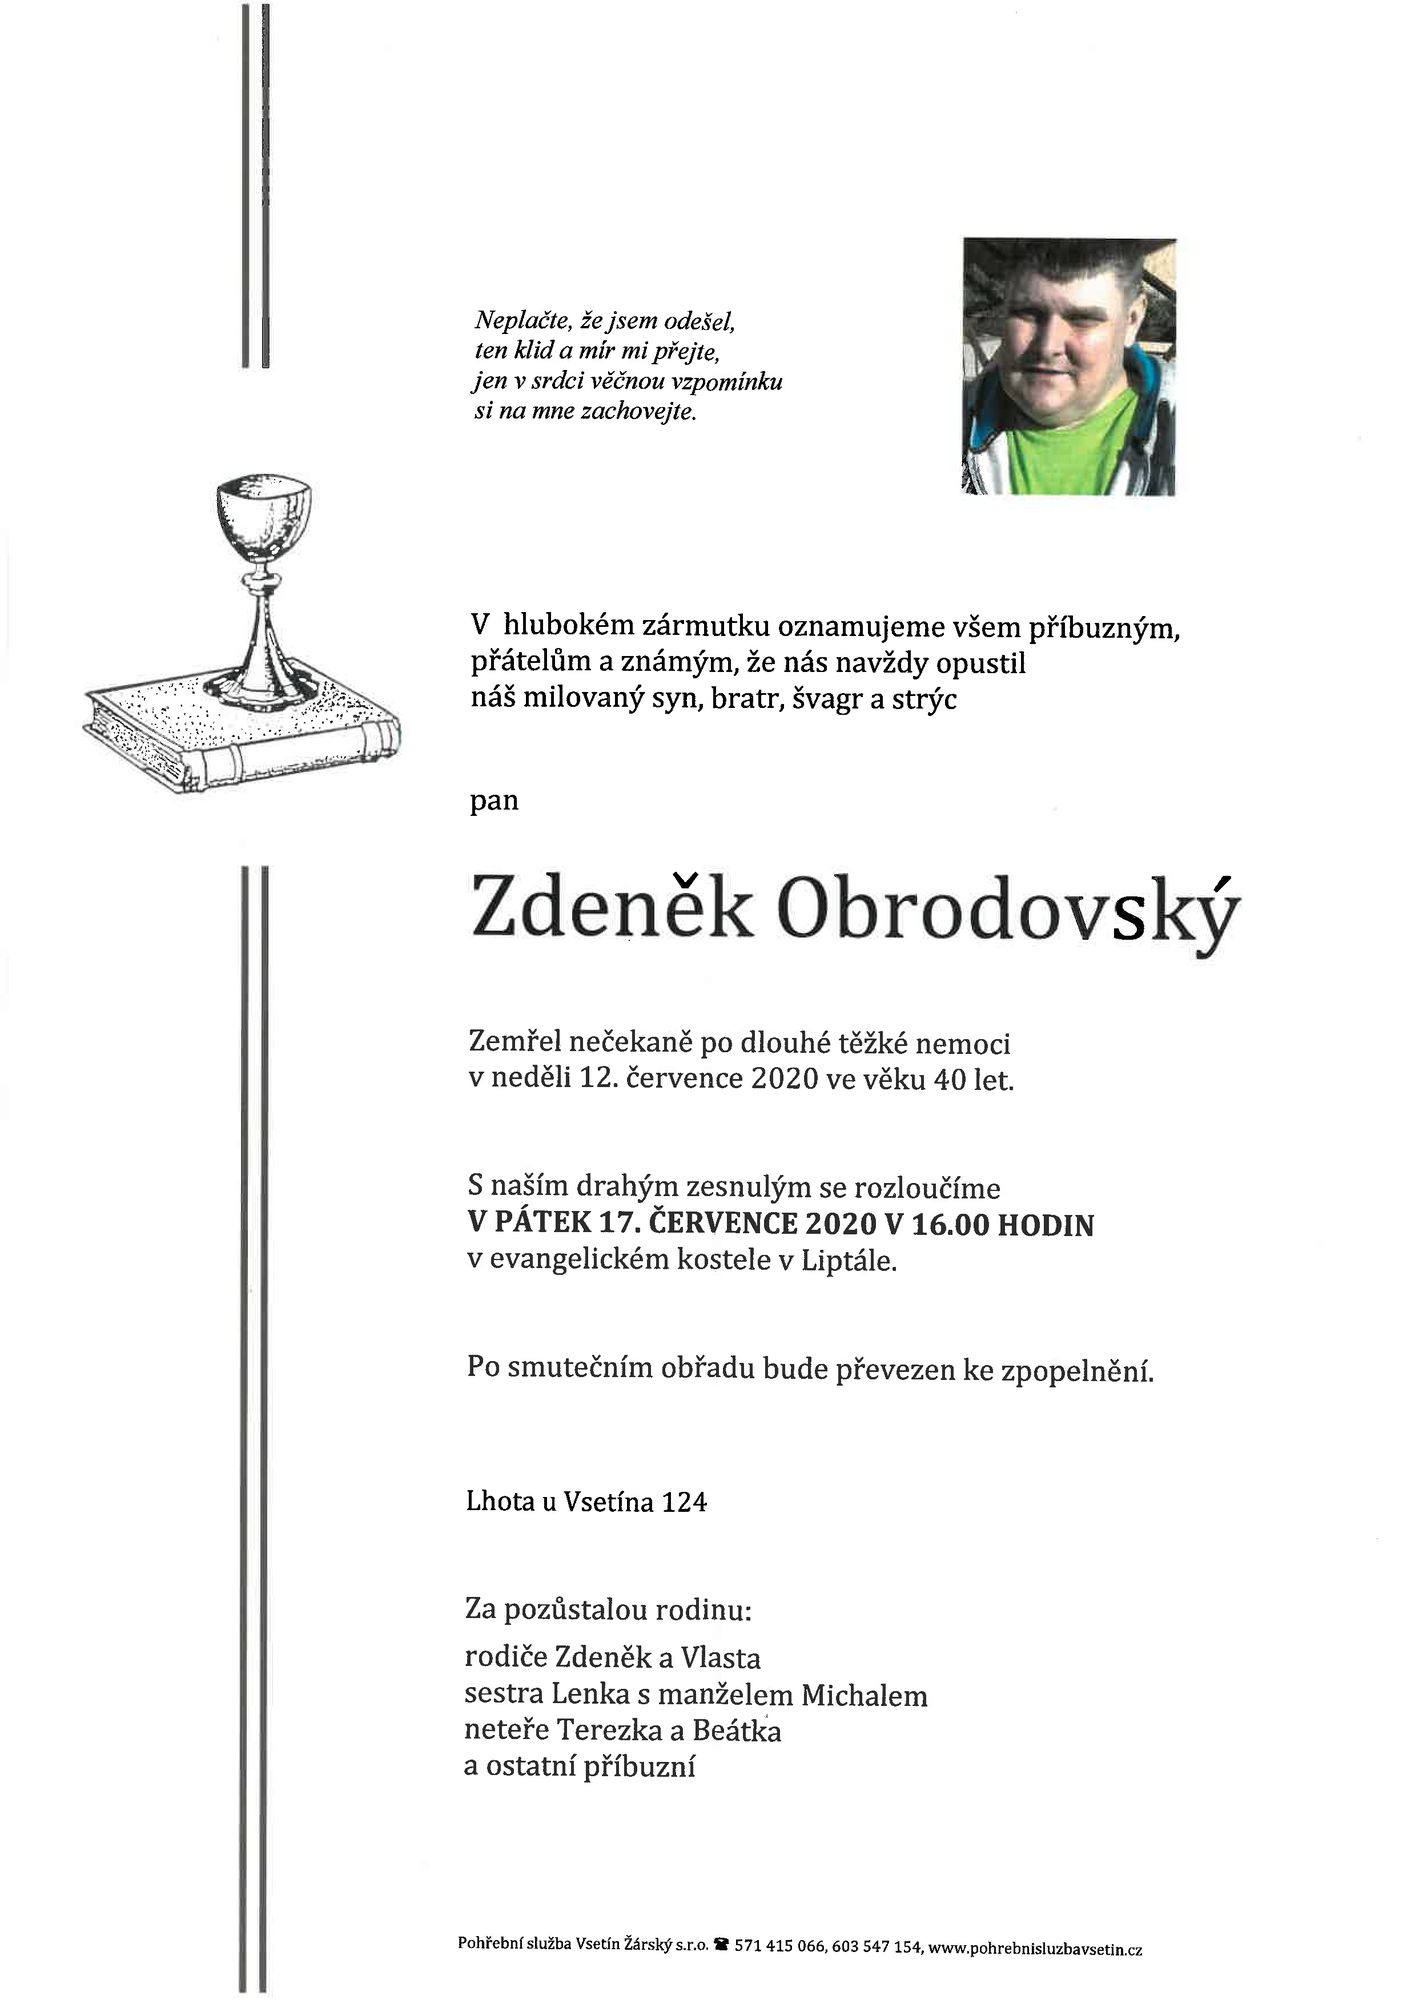 Zdeněk Obrodovský